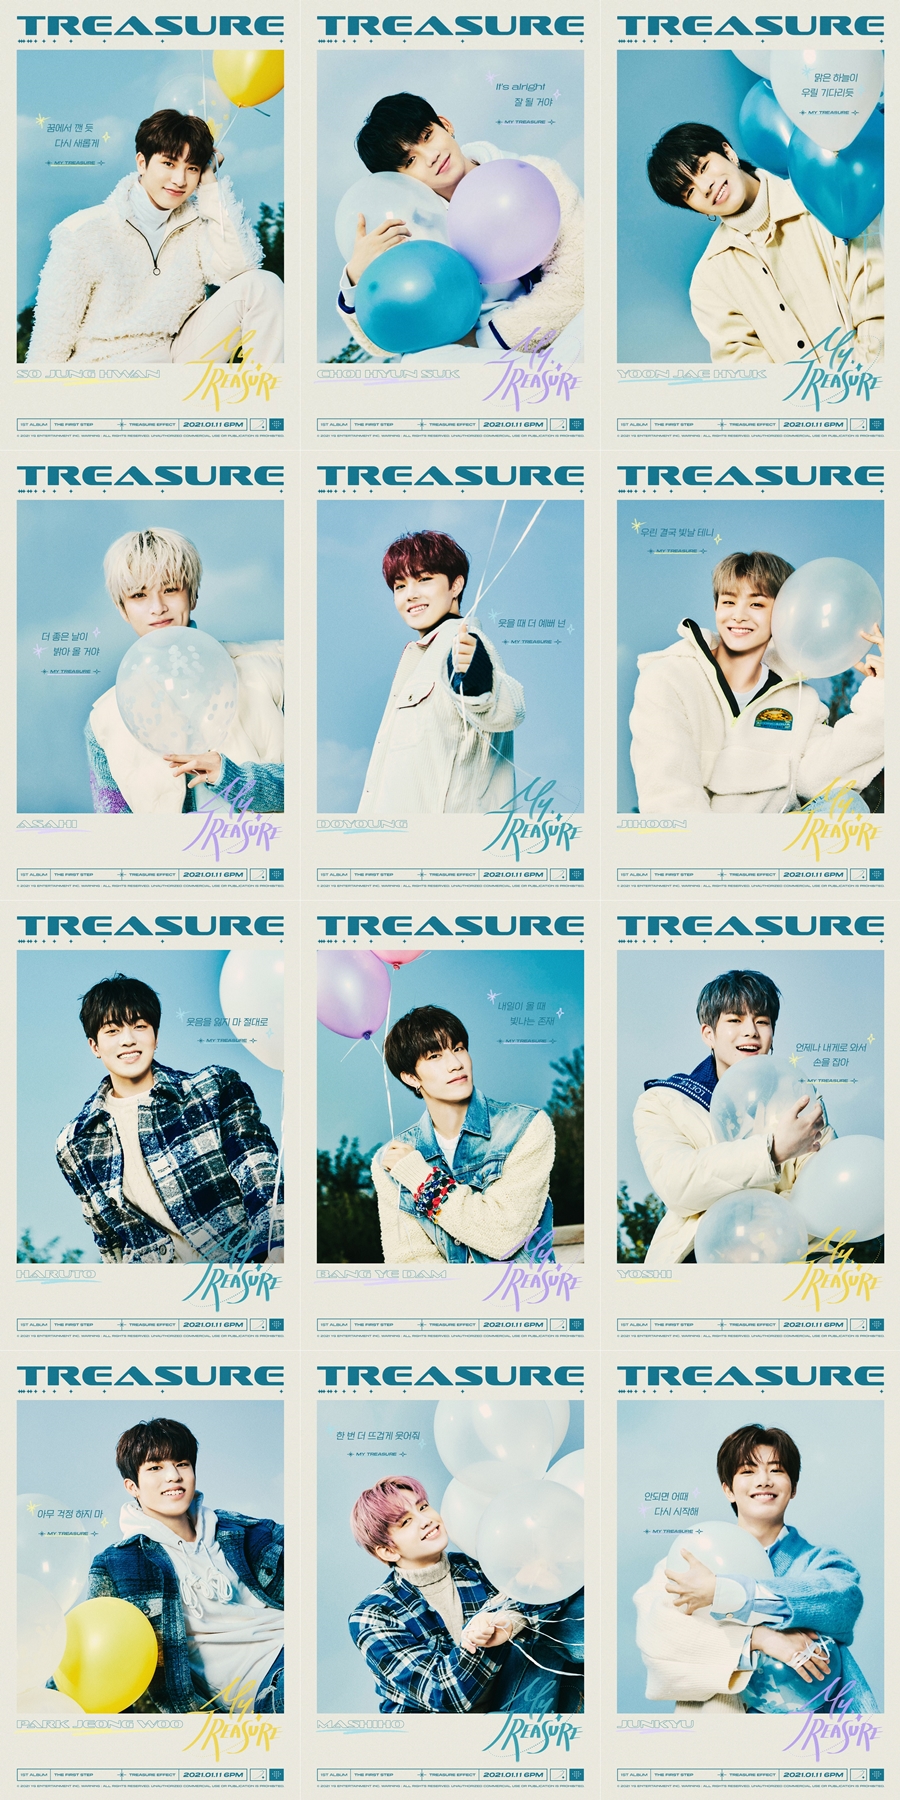 트레저, 첫 정규앨범 타이틀곡 'MY TREASURE' 멤버별 리릭 포스터 공개